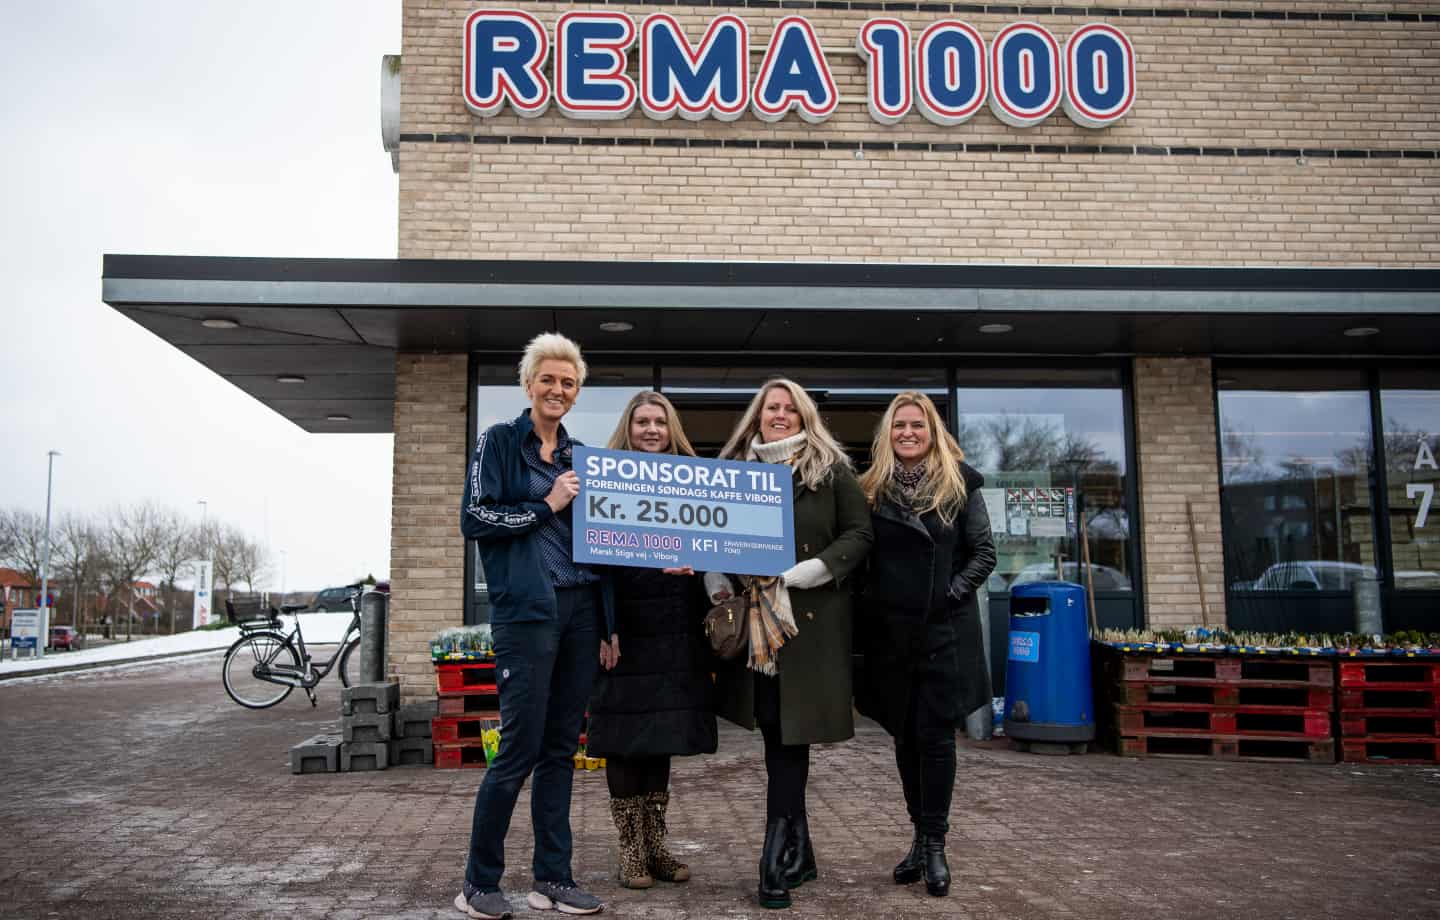 Tak kaffe: Rema 1000 25.000 kroner til søndags-slabberas | viborg -folkeblad.dk